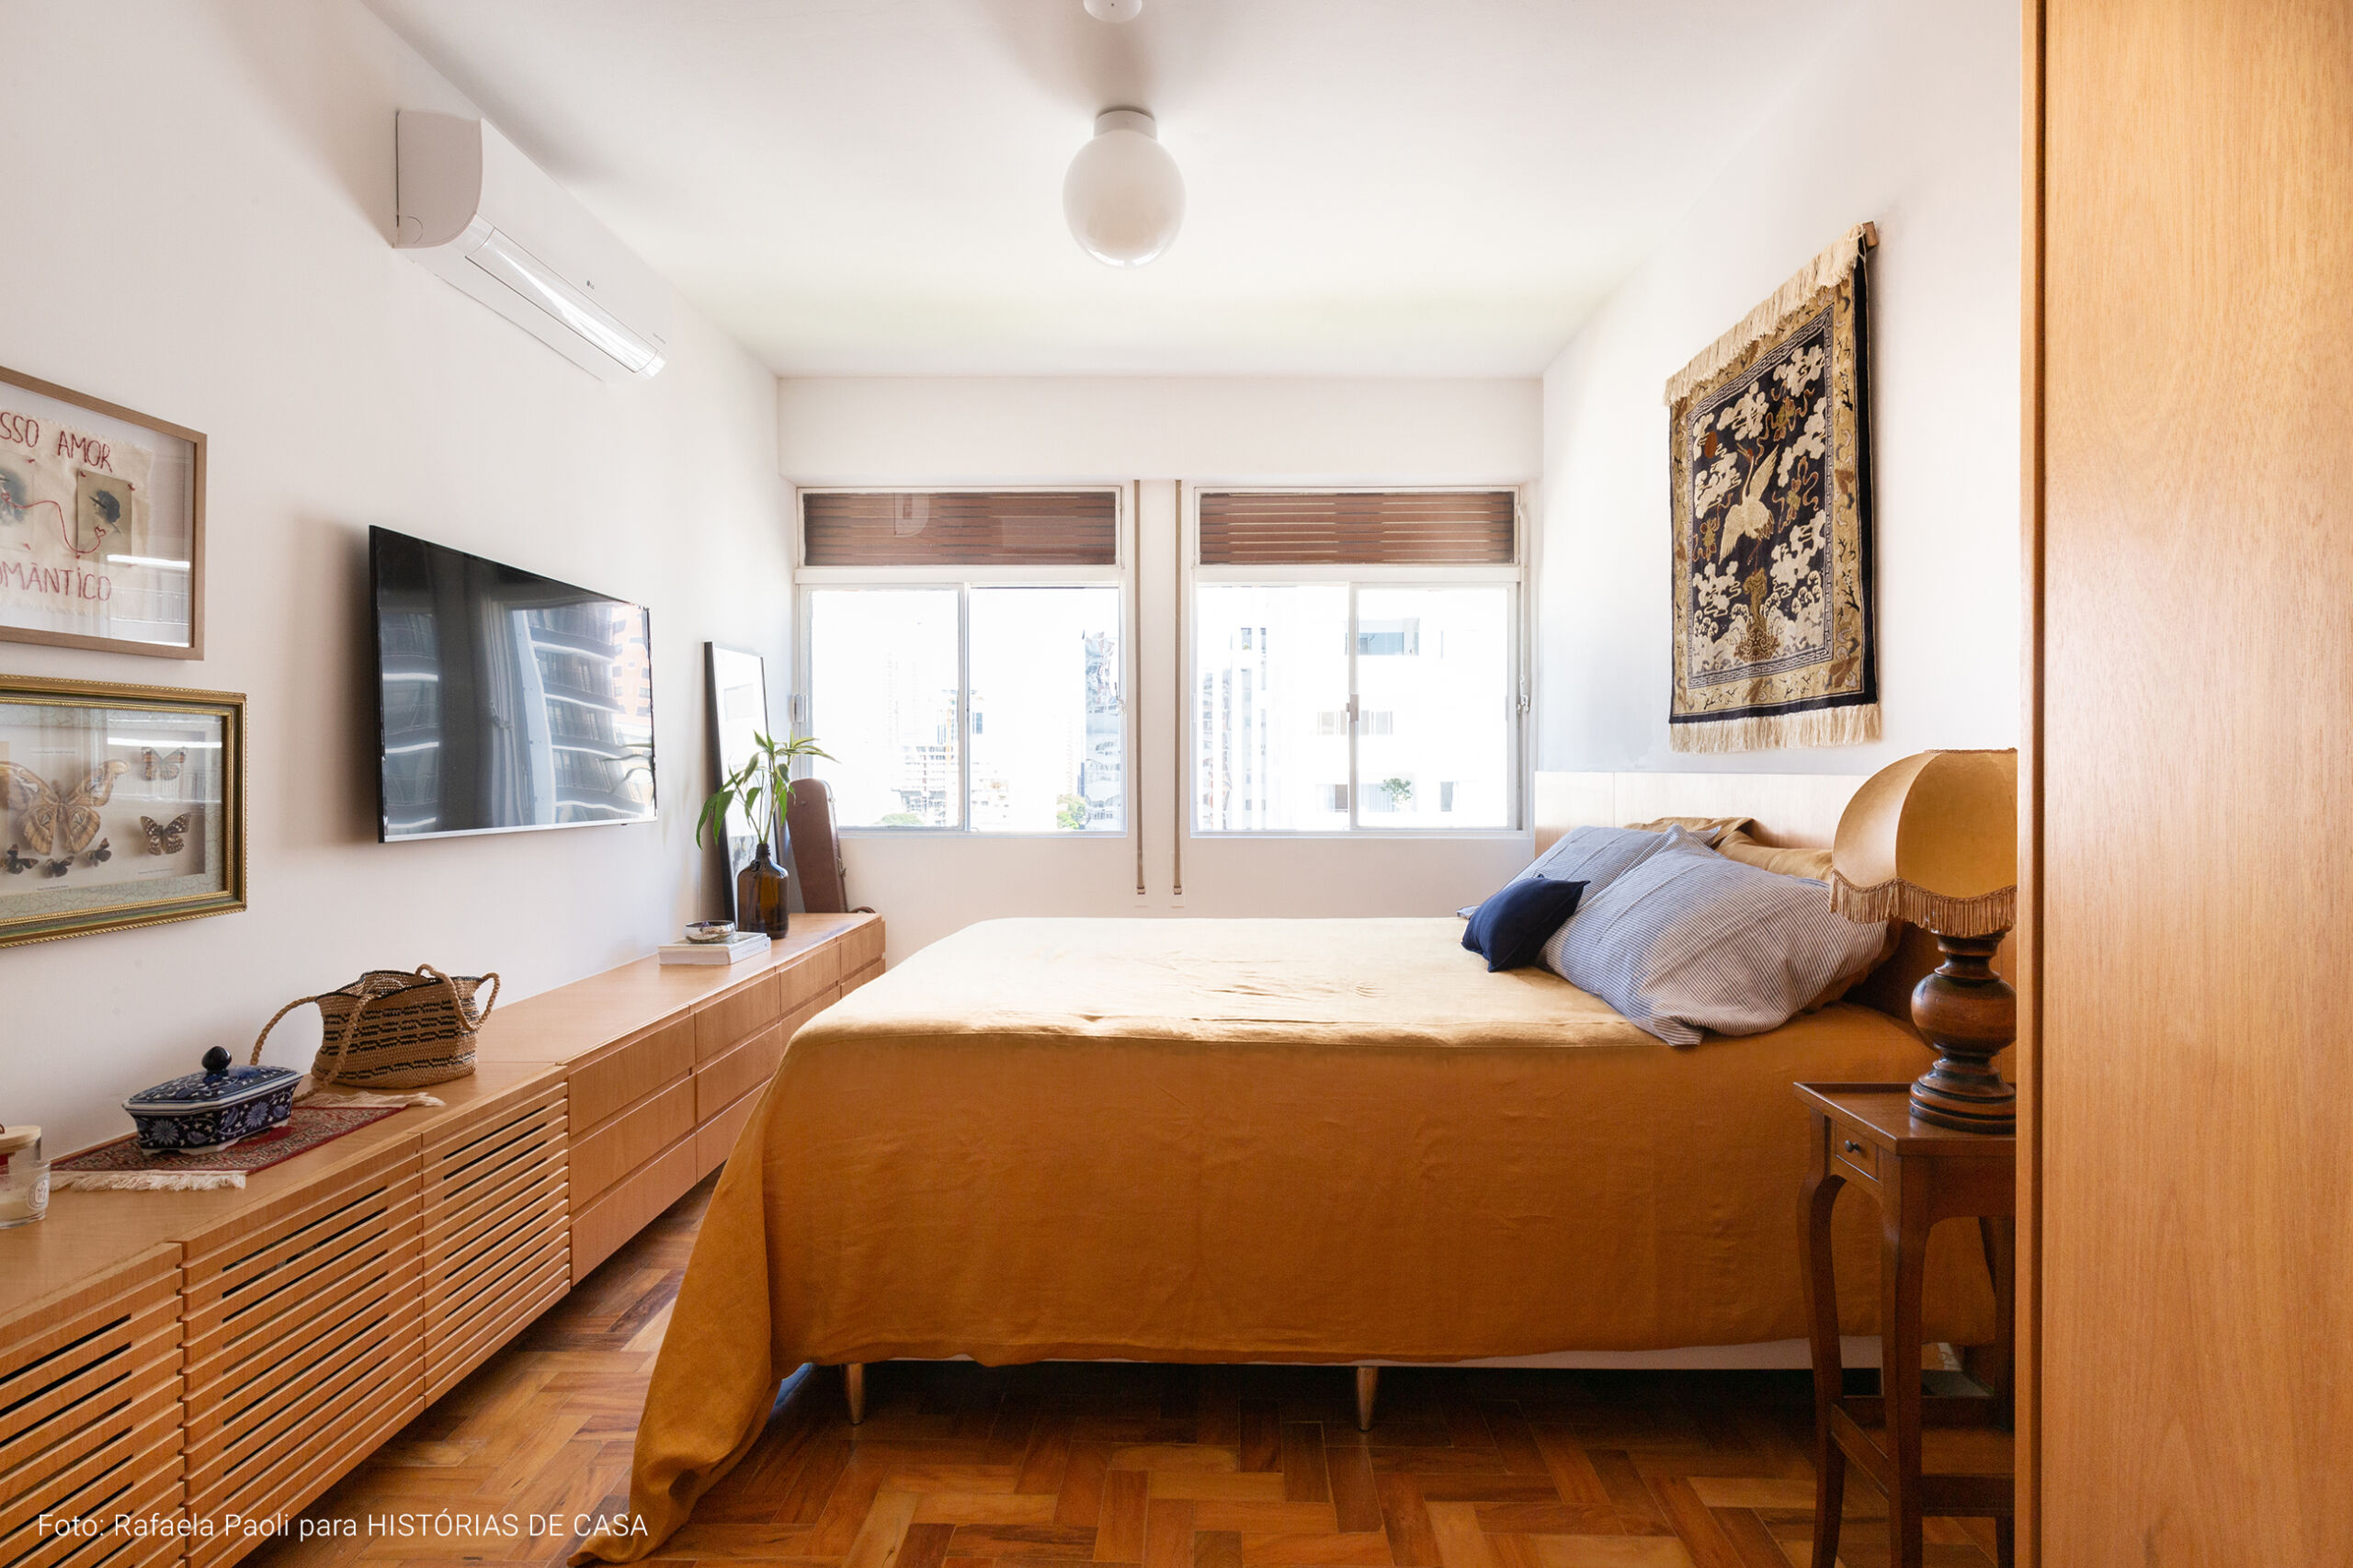 Apartamento com ambientes integrados, móveis garimpados e objetos antigos